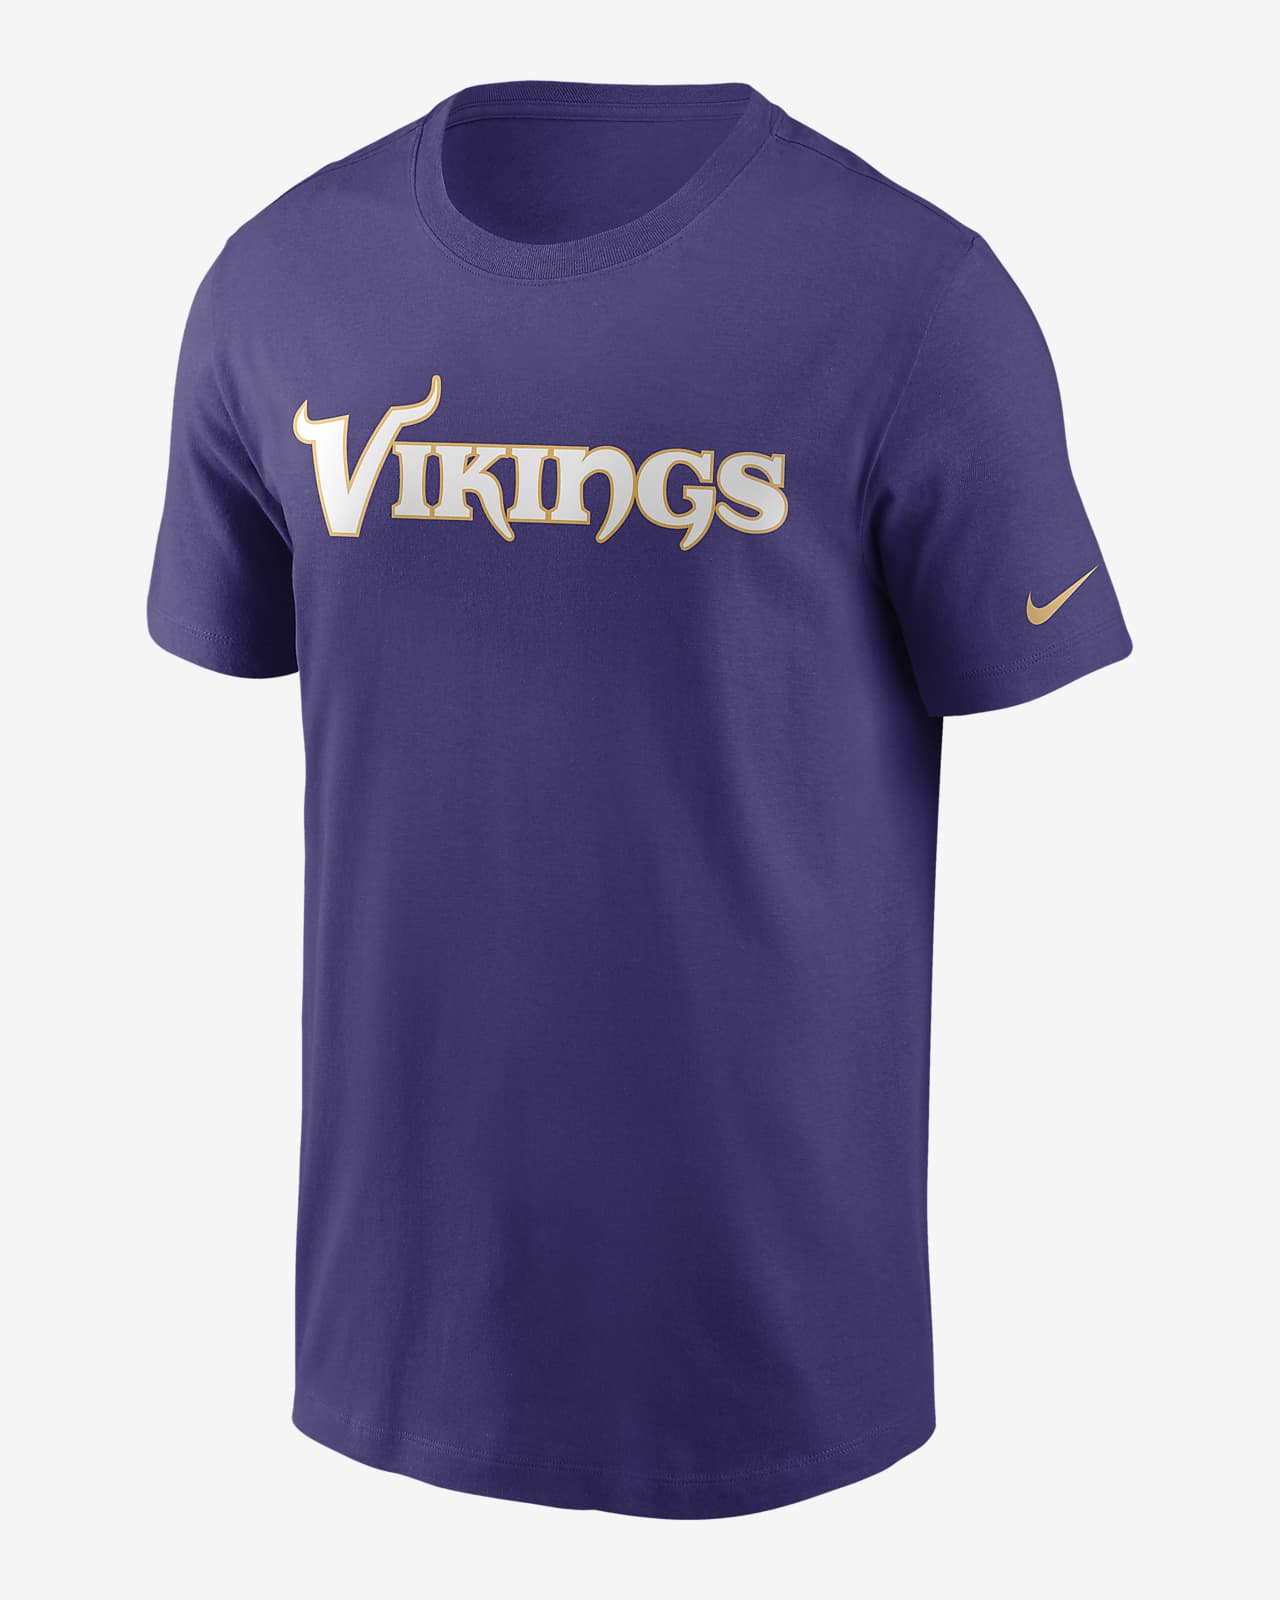 Nike (NFL Minnesota Vikings) Men's T-Shirt